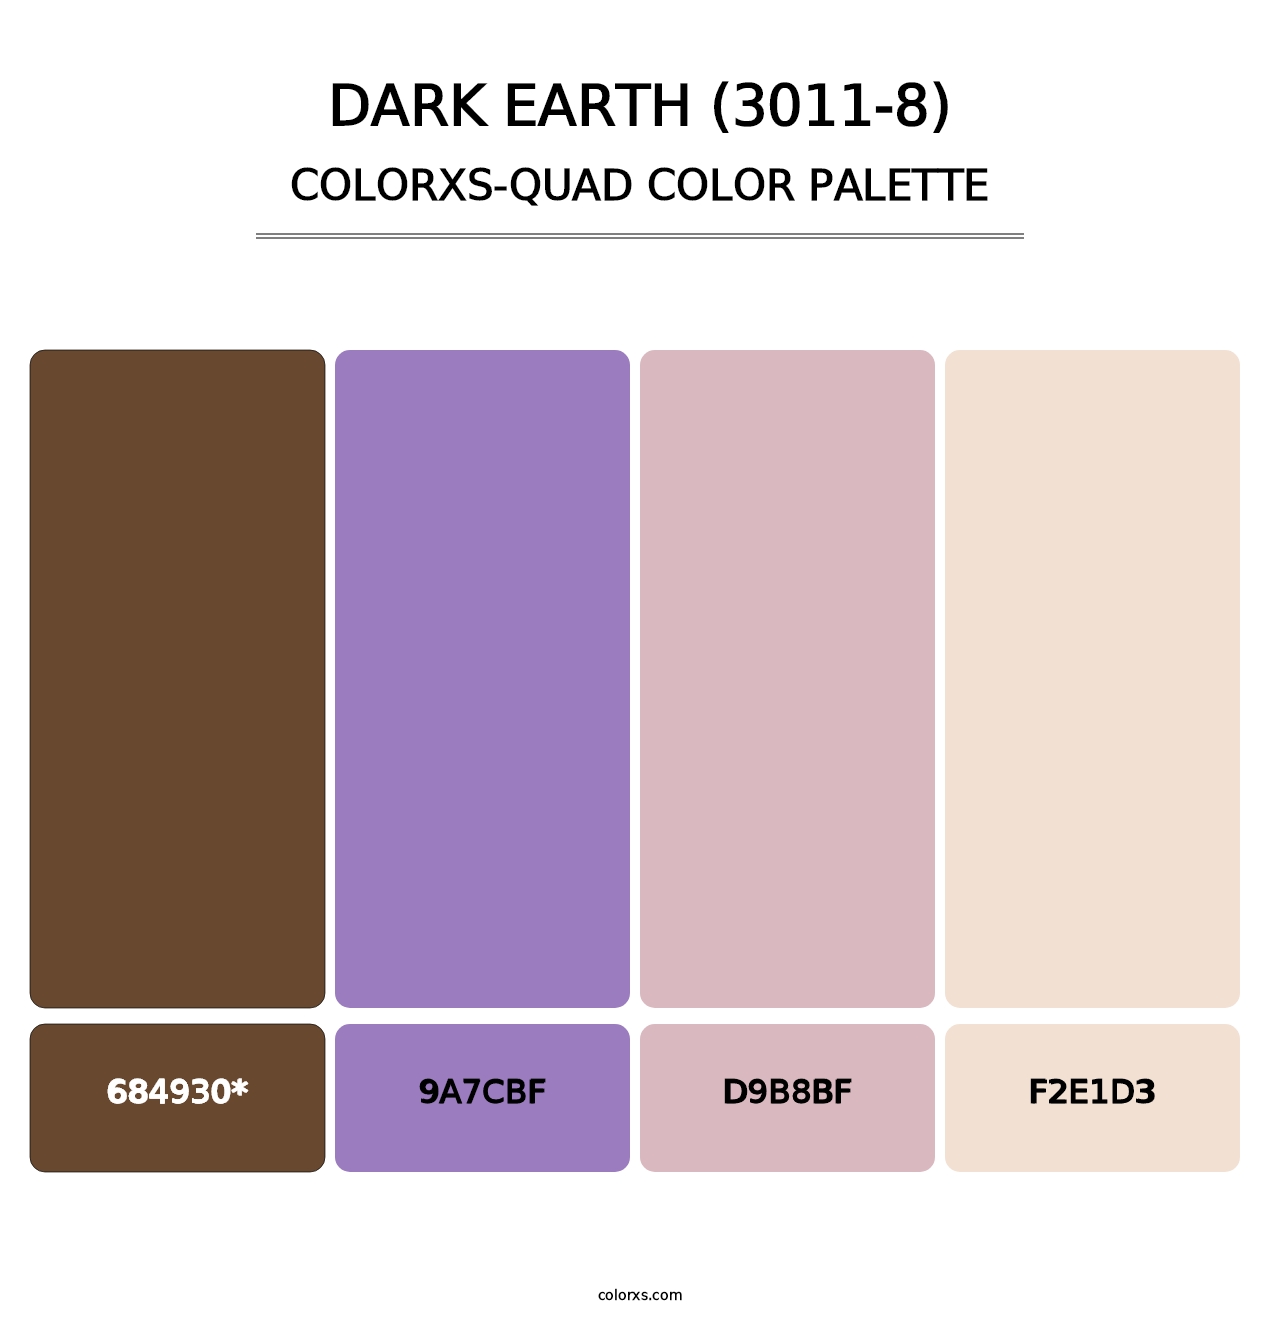 Dark Earth (3011-8) - Colorxs Quad Palette